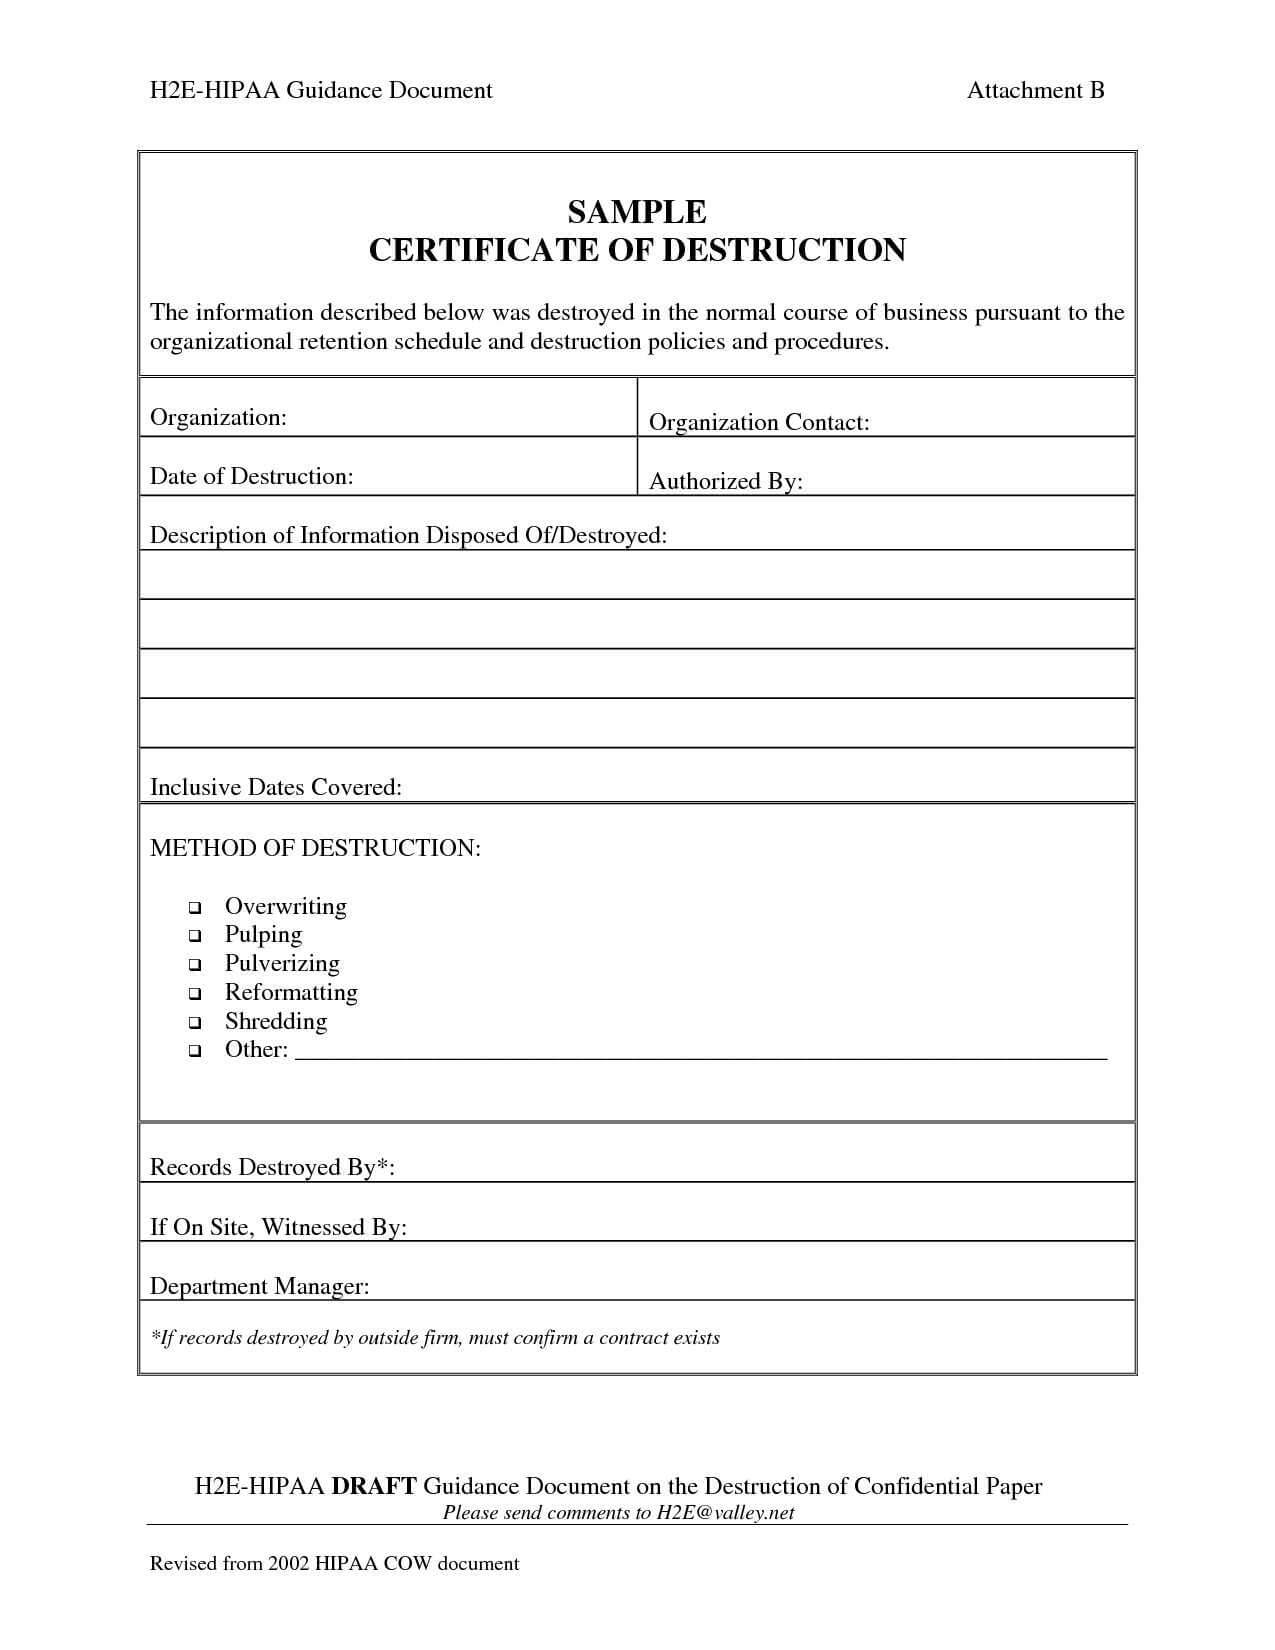 001 Template Ideas Certificate Of Destruction Frightening Inside Certificate Of Disposal Template